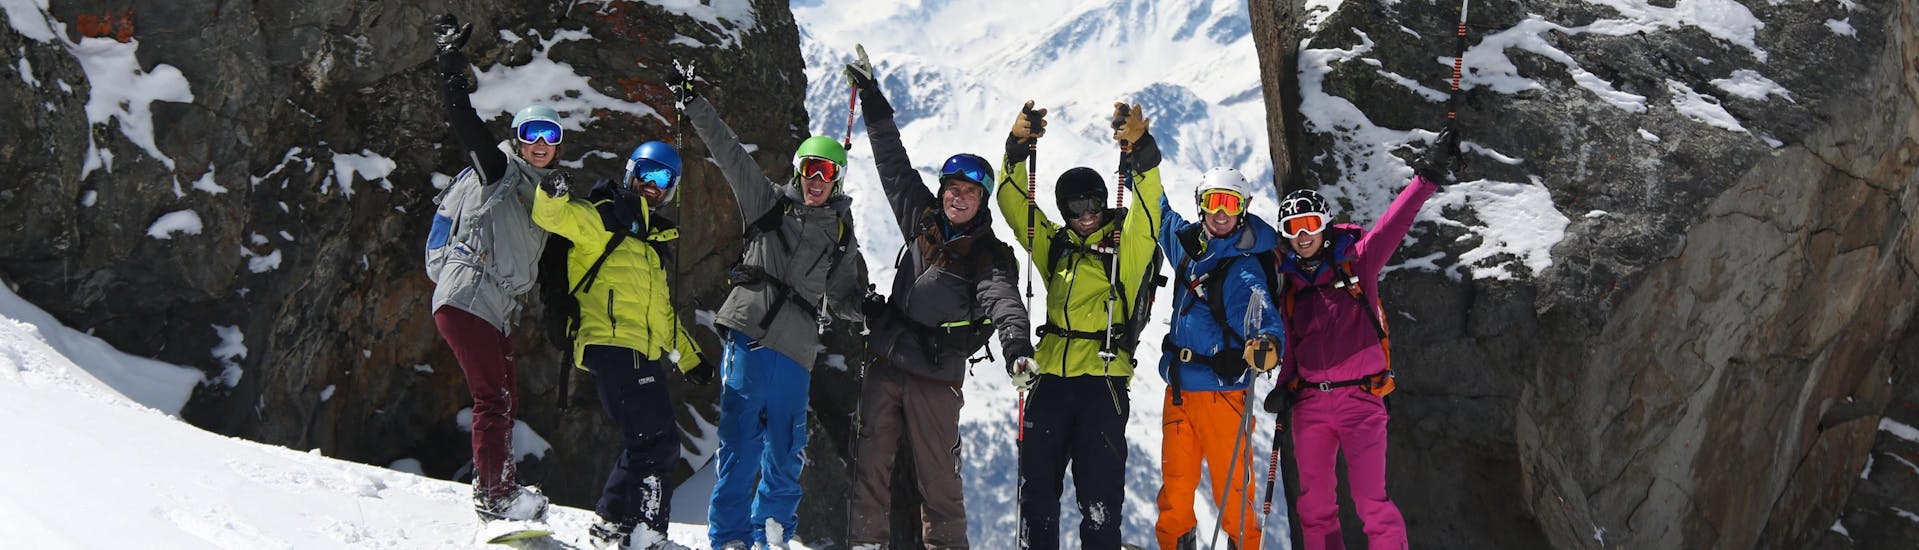 Sous la direction d'un moniteur de l'école de ski Prosneige Val d'Isère un skieur fait des progrès rapides durant son Cours particulier de ski pour Adultes - Basse saison.